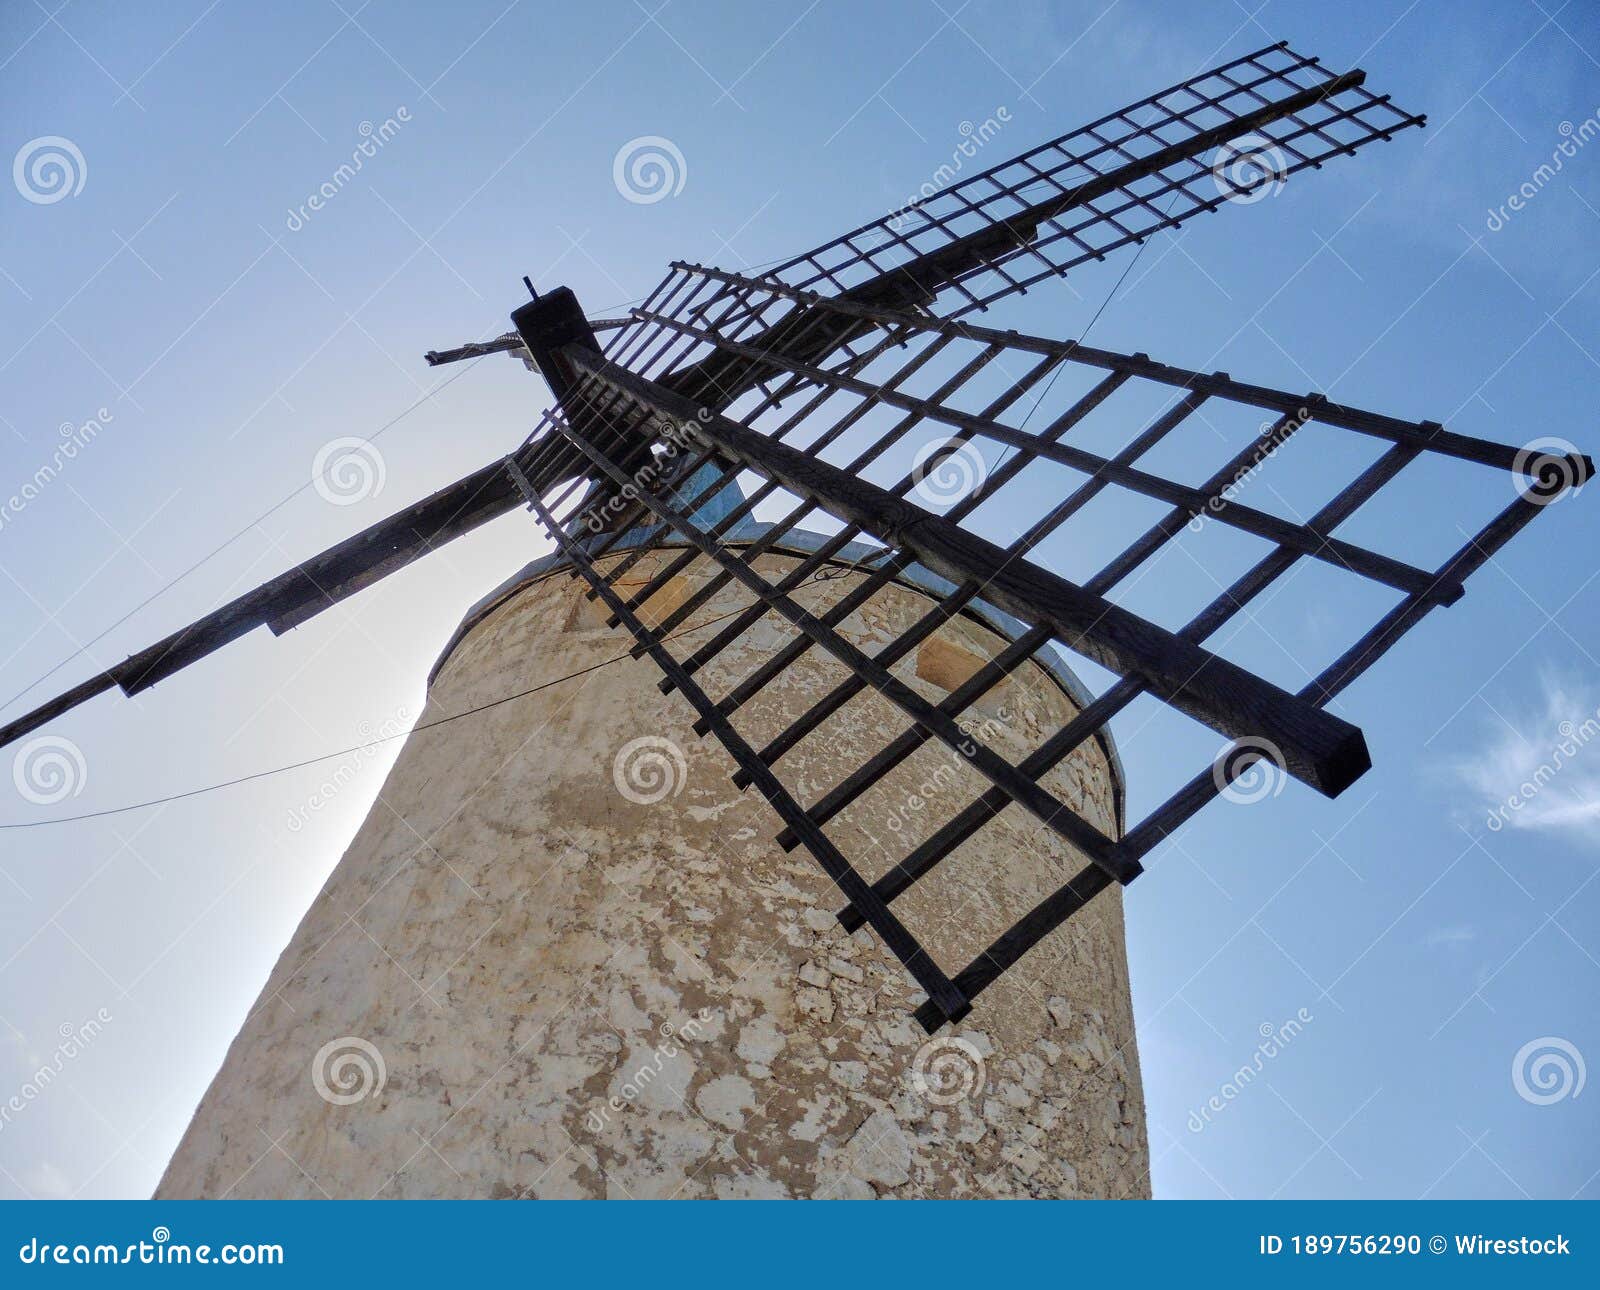 low angle shot of the windmill in molinos de viento de consuegra, spain